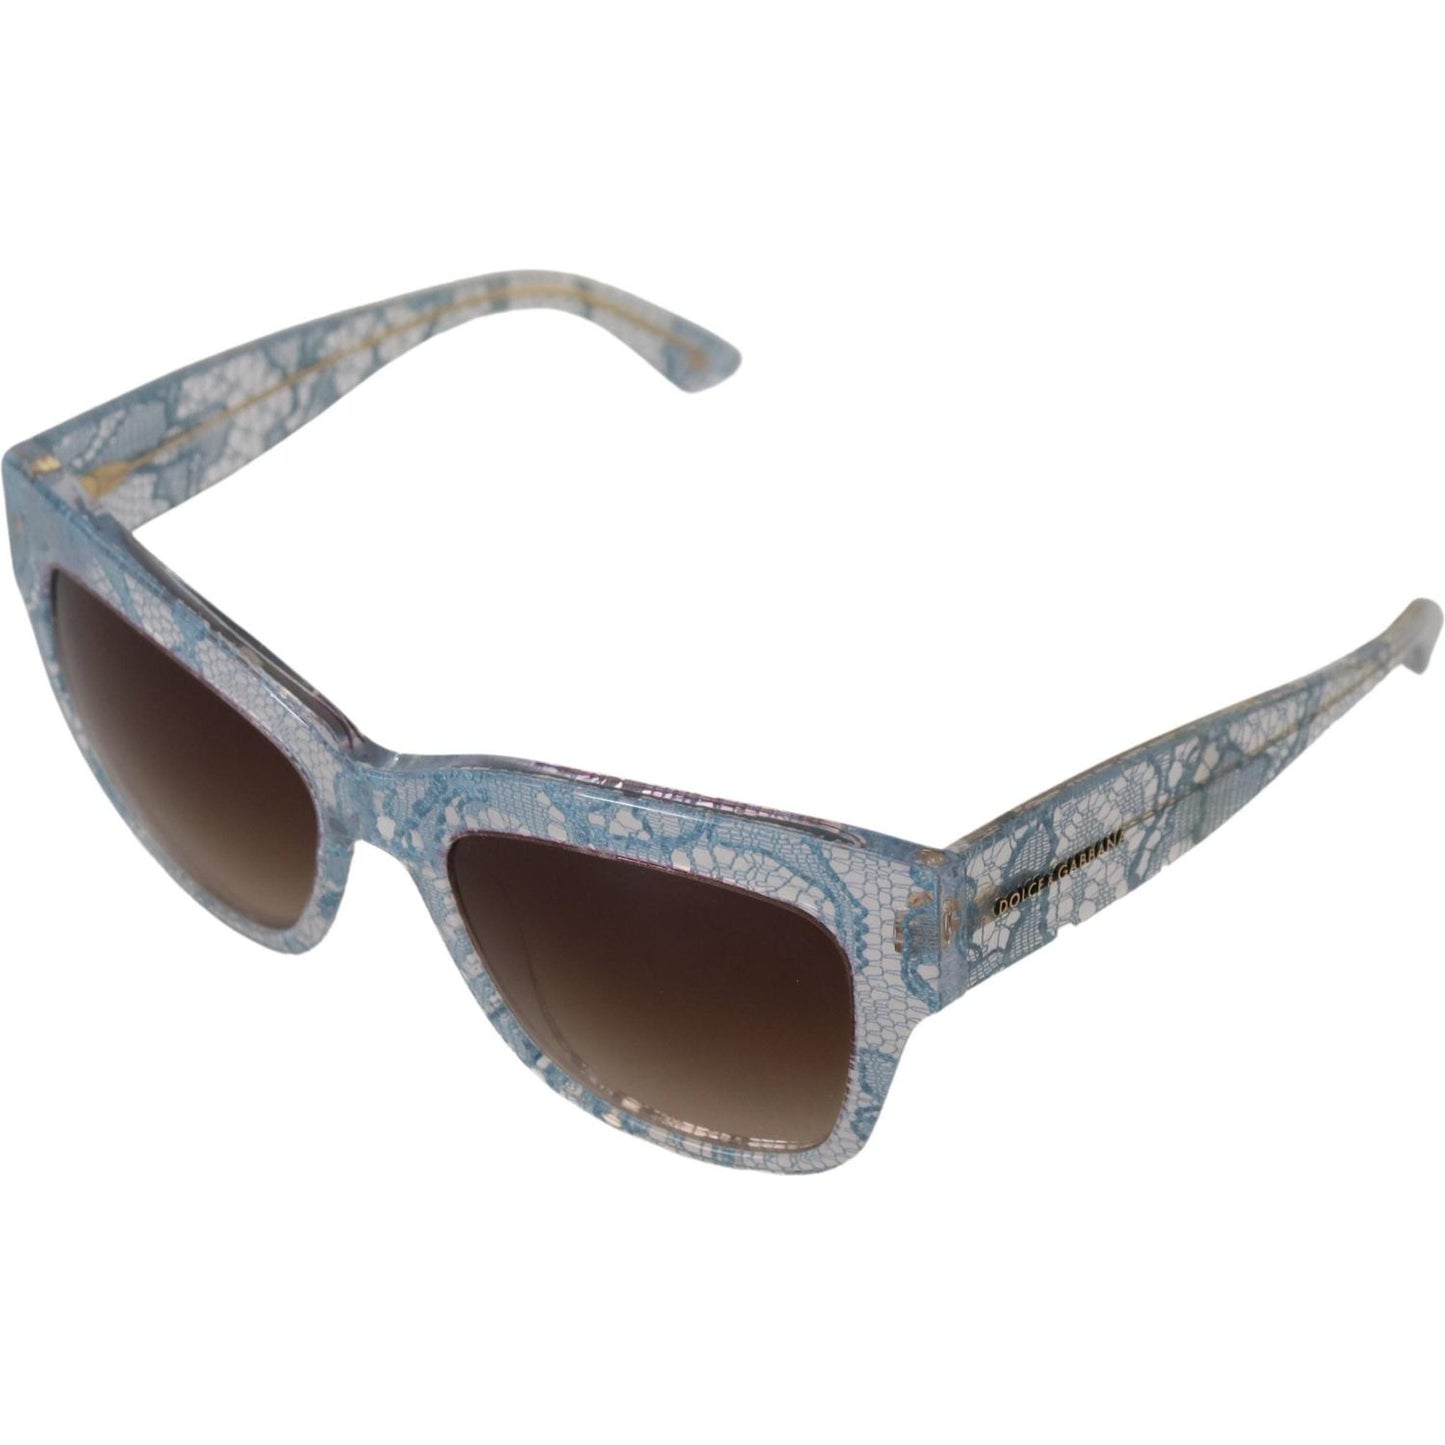 Dolce & Gabbana Elegant Lace-Trimmed Gradient Sunglasses blue-lace-acetate-rectangle-dg4231-shades-sunglasses